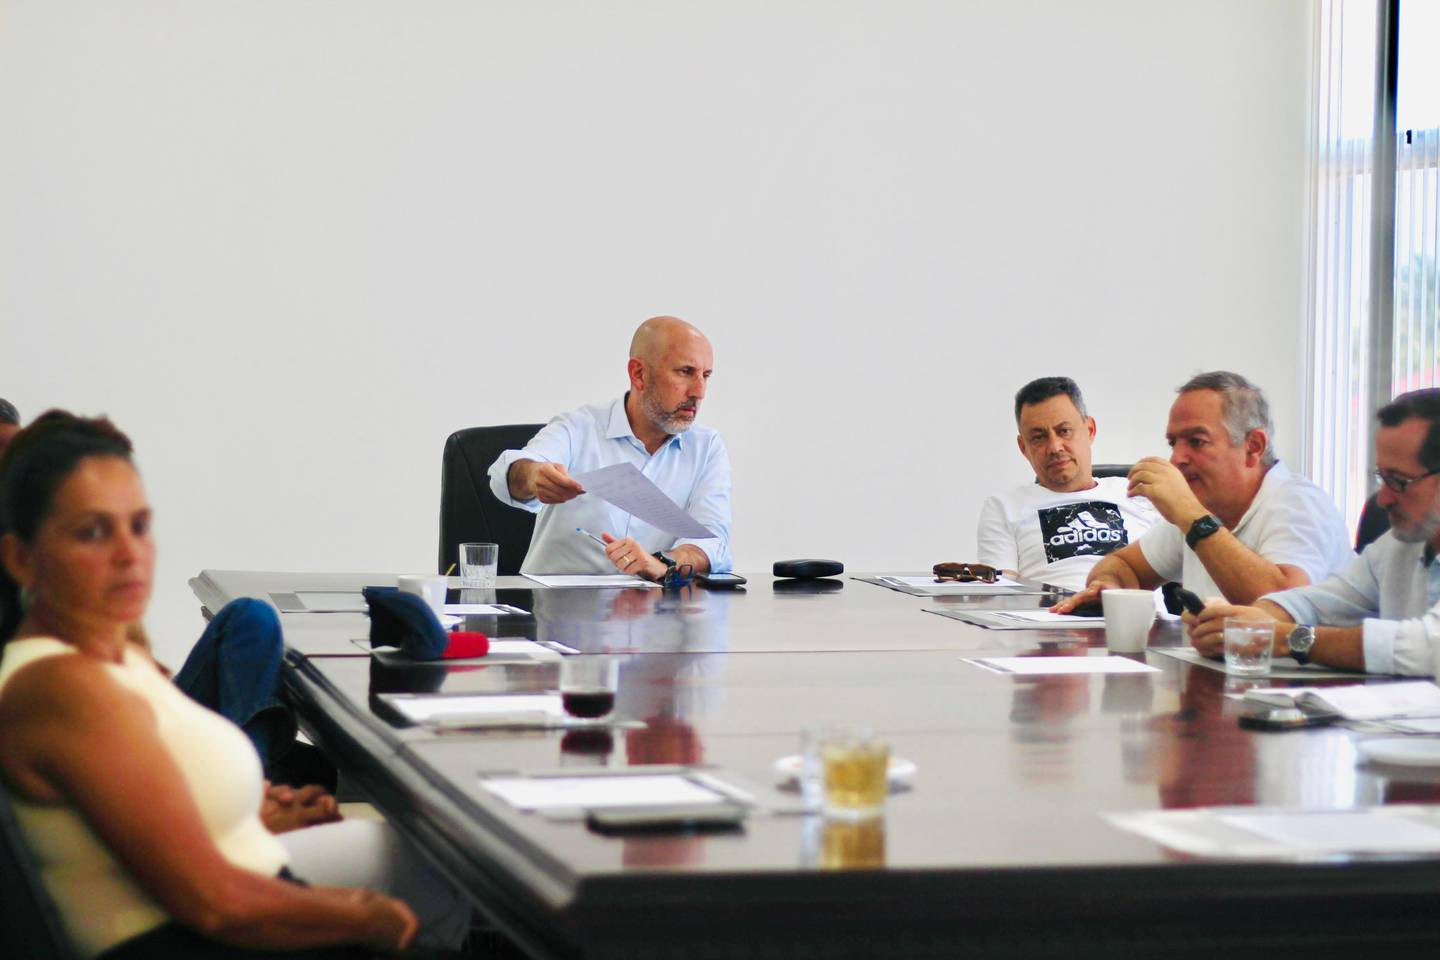 El Comité Ejecutivo de la Fedefútbol sesionó en Puntarenas por invitación de Silvia Bolaños y Joseph Joseph atendió a los medios de comunicación tras observar los avances del Centro de Alto Rendimiento del Puerto.